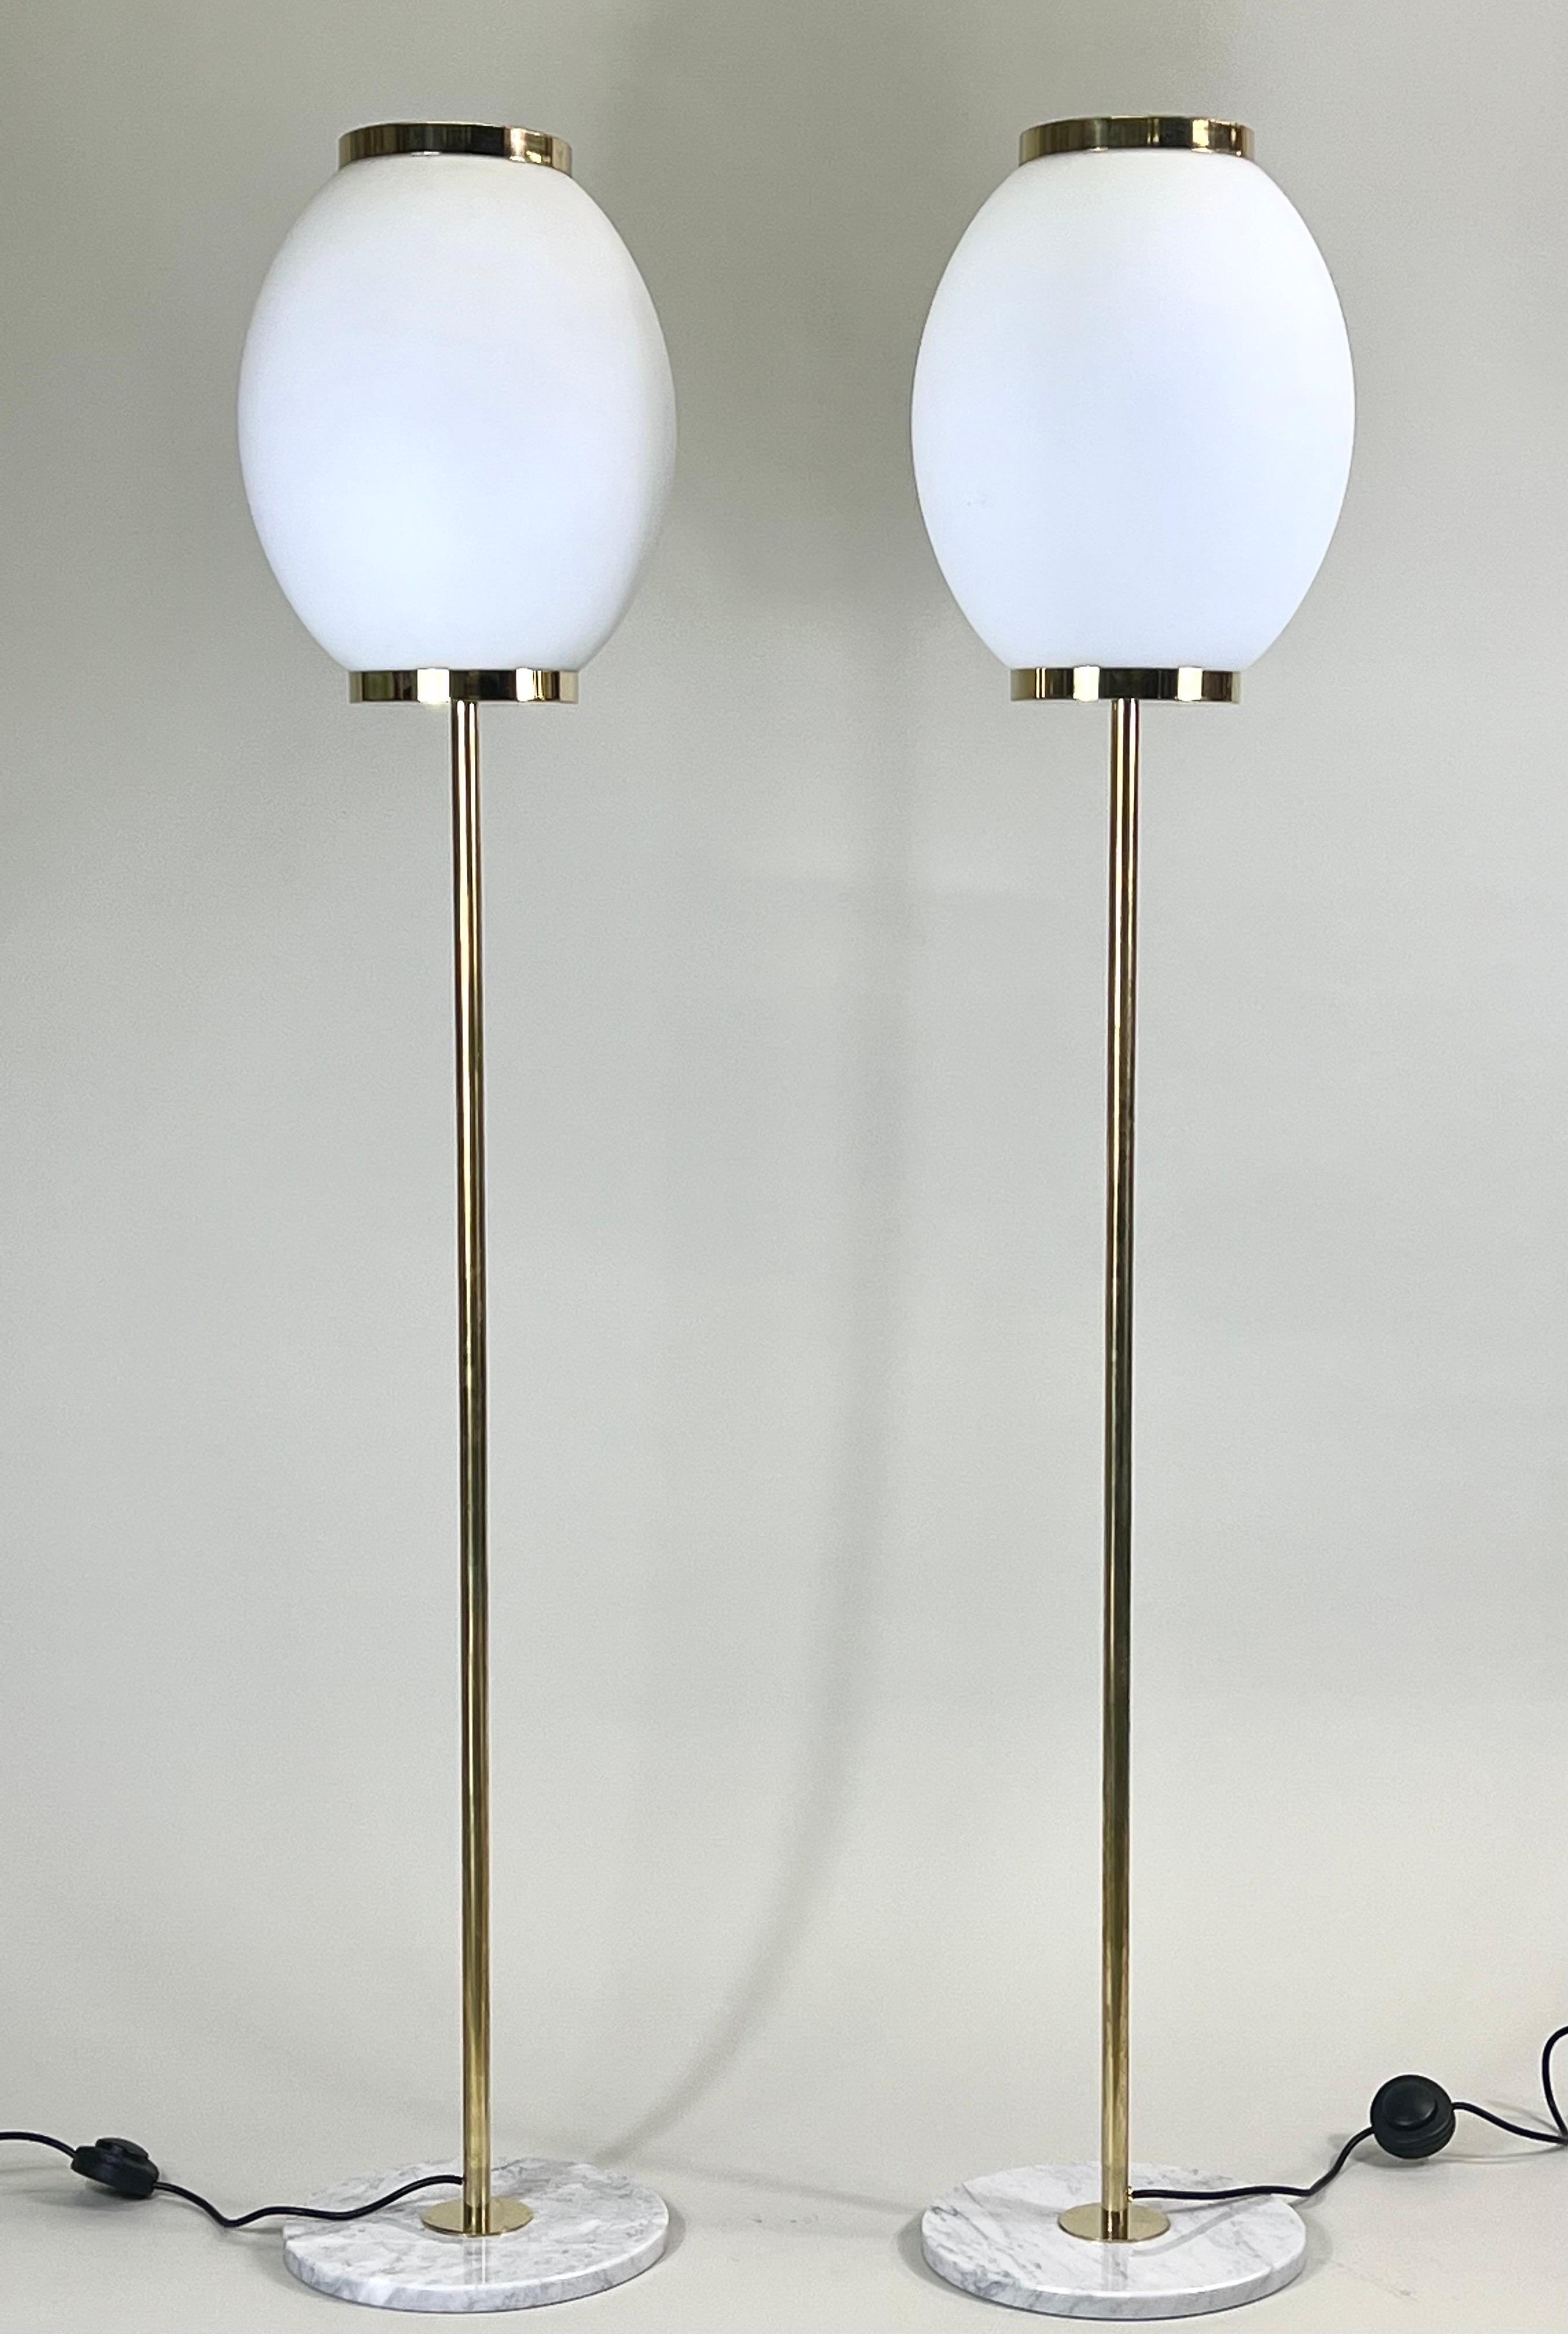 Elegante paire de lampadaires italiens de style Mid-Century Modern attribués à Max Ingrand et Fontana Arte. Les lampes sur pied ont une forme discrète et raffinée et sont composées de beaux matériaux complémentaires. Les pièces reposent sur des